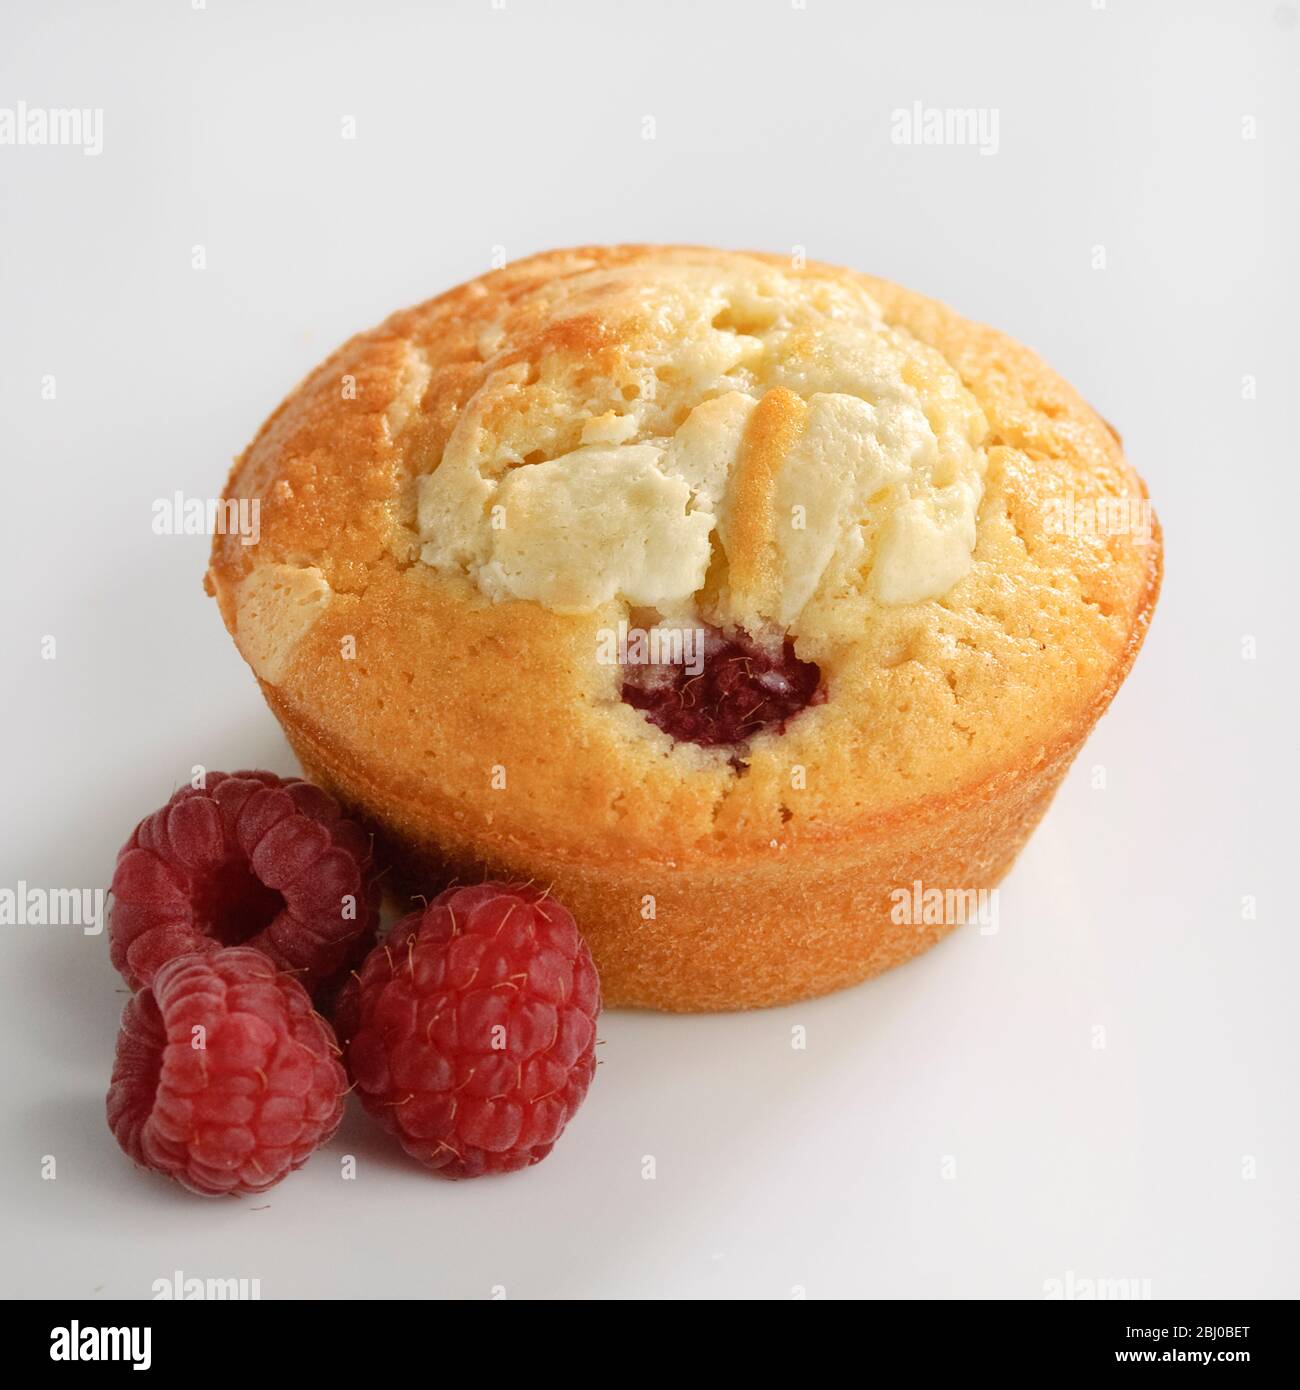 Muffin aus Himbeere und weißer Schokolade auf weißer Oberfläche - Stockfoto